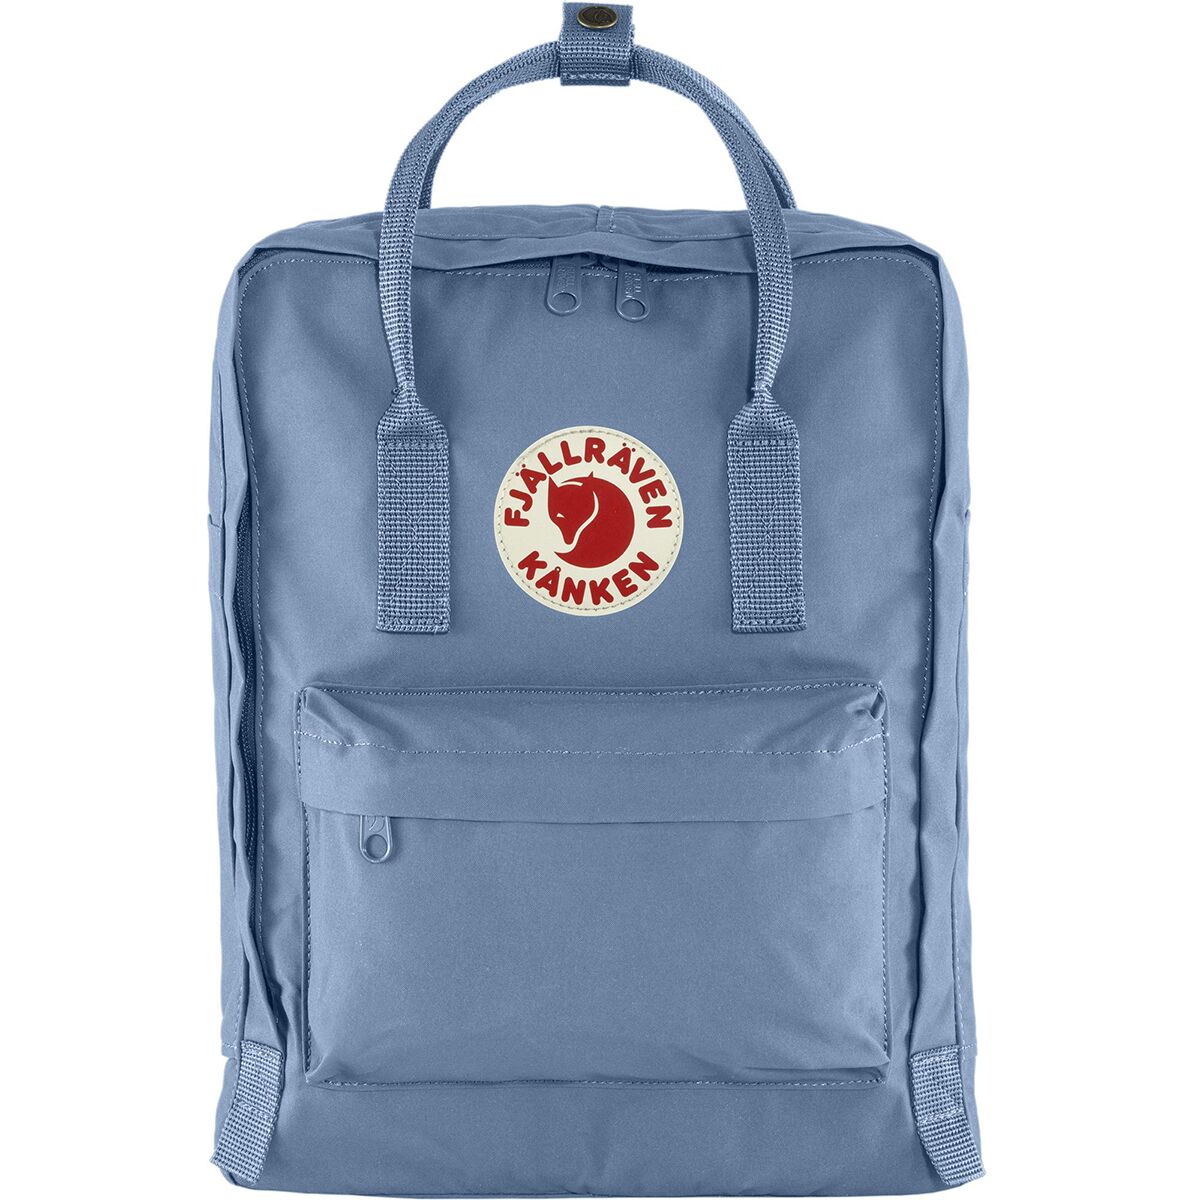 Fjallraven Kanken 16L Backpack | eBay هوم سويت هوم